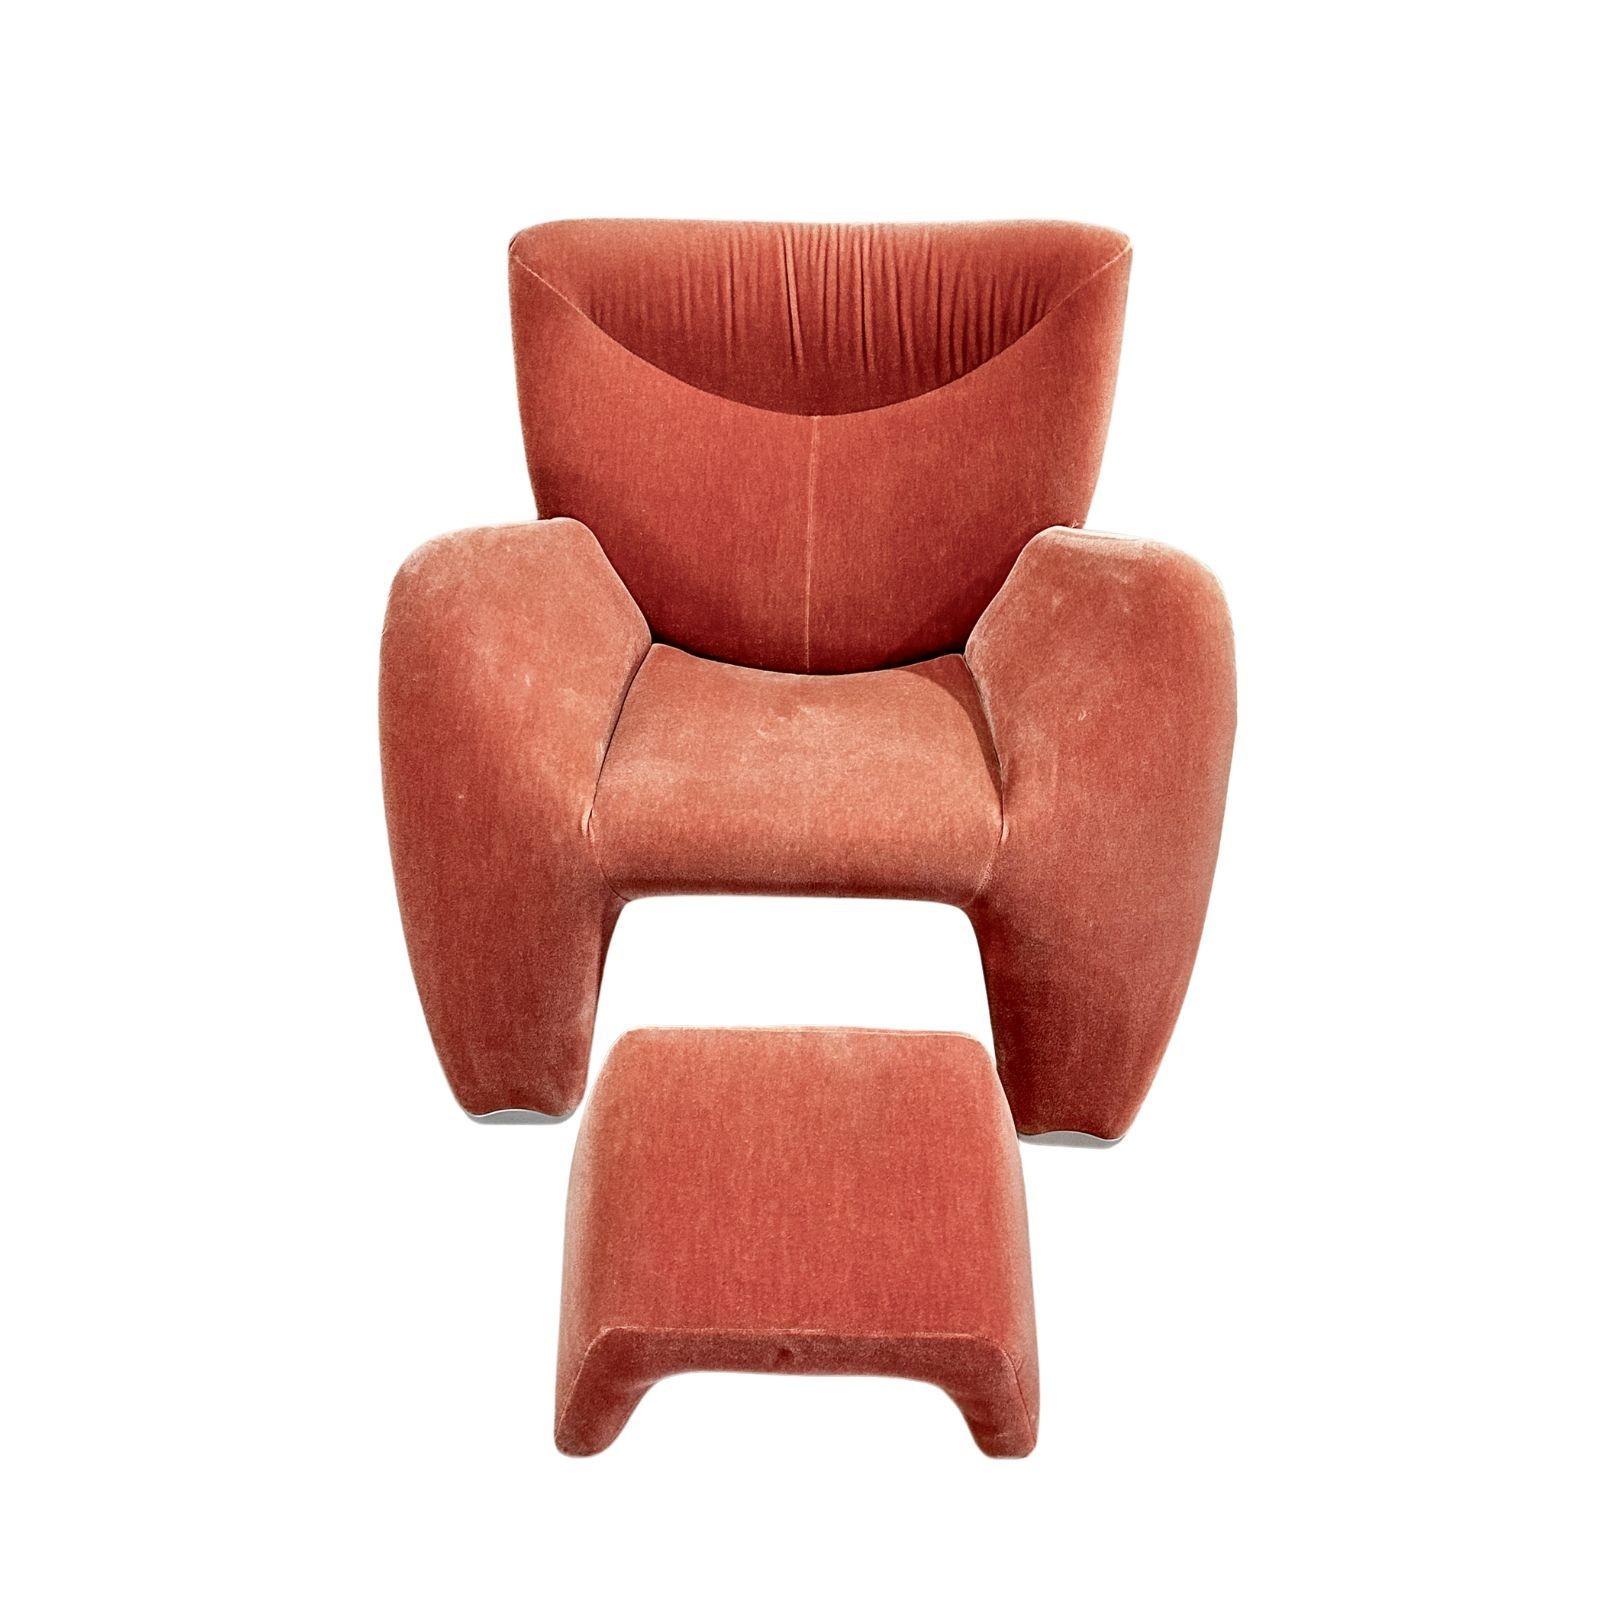 Jon Armgardt Enchanton Lounge Chair & Ottoman by Leolux, 1970. Feet on chair and ottoman/stool are aluminum. Original Mohair. Tag under chair 1Leolux.
Measures 35